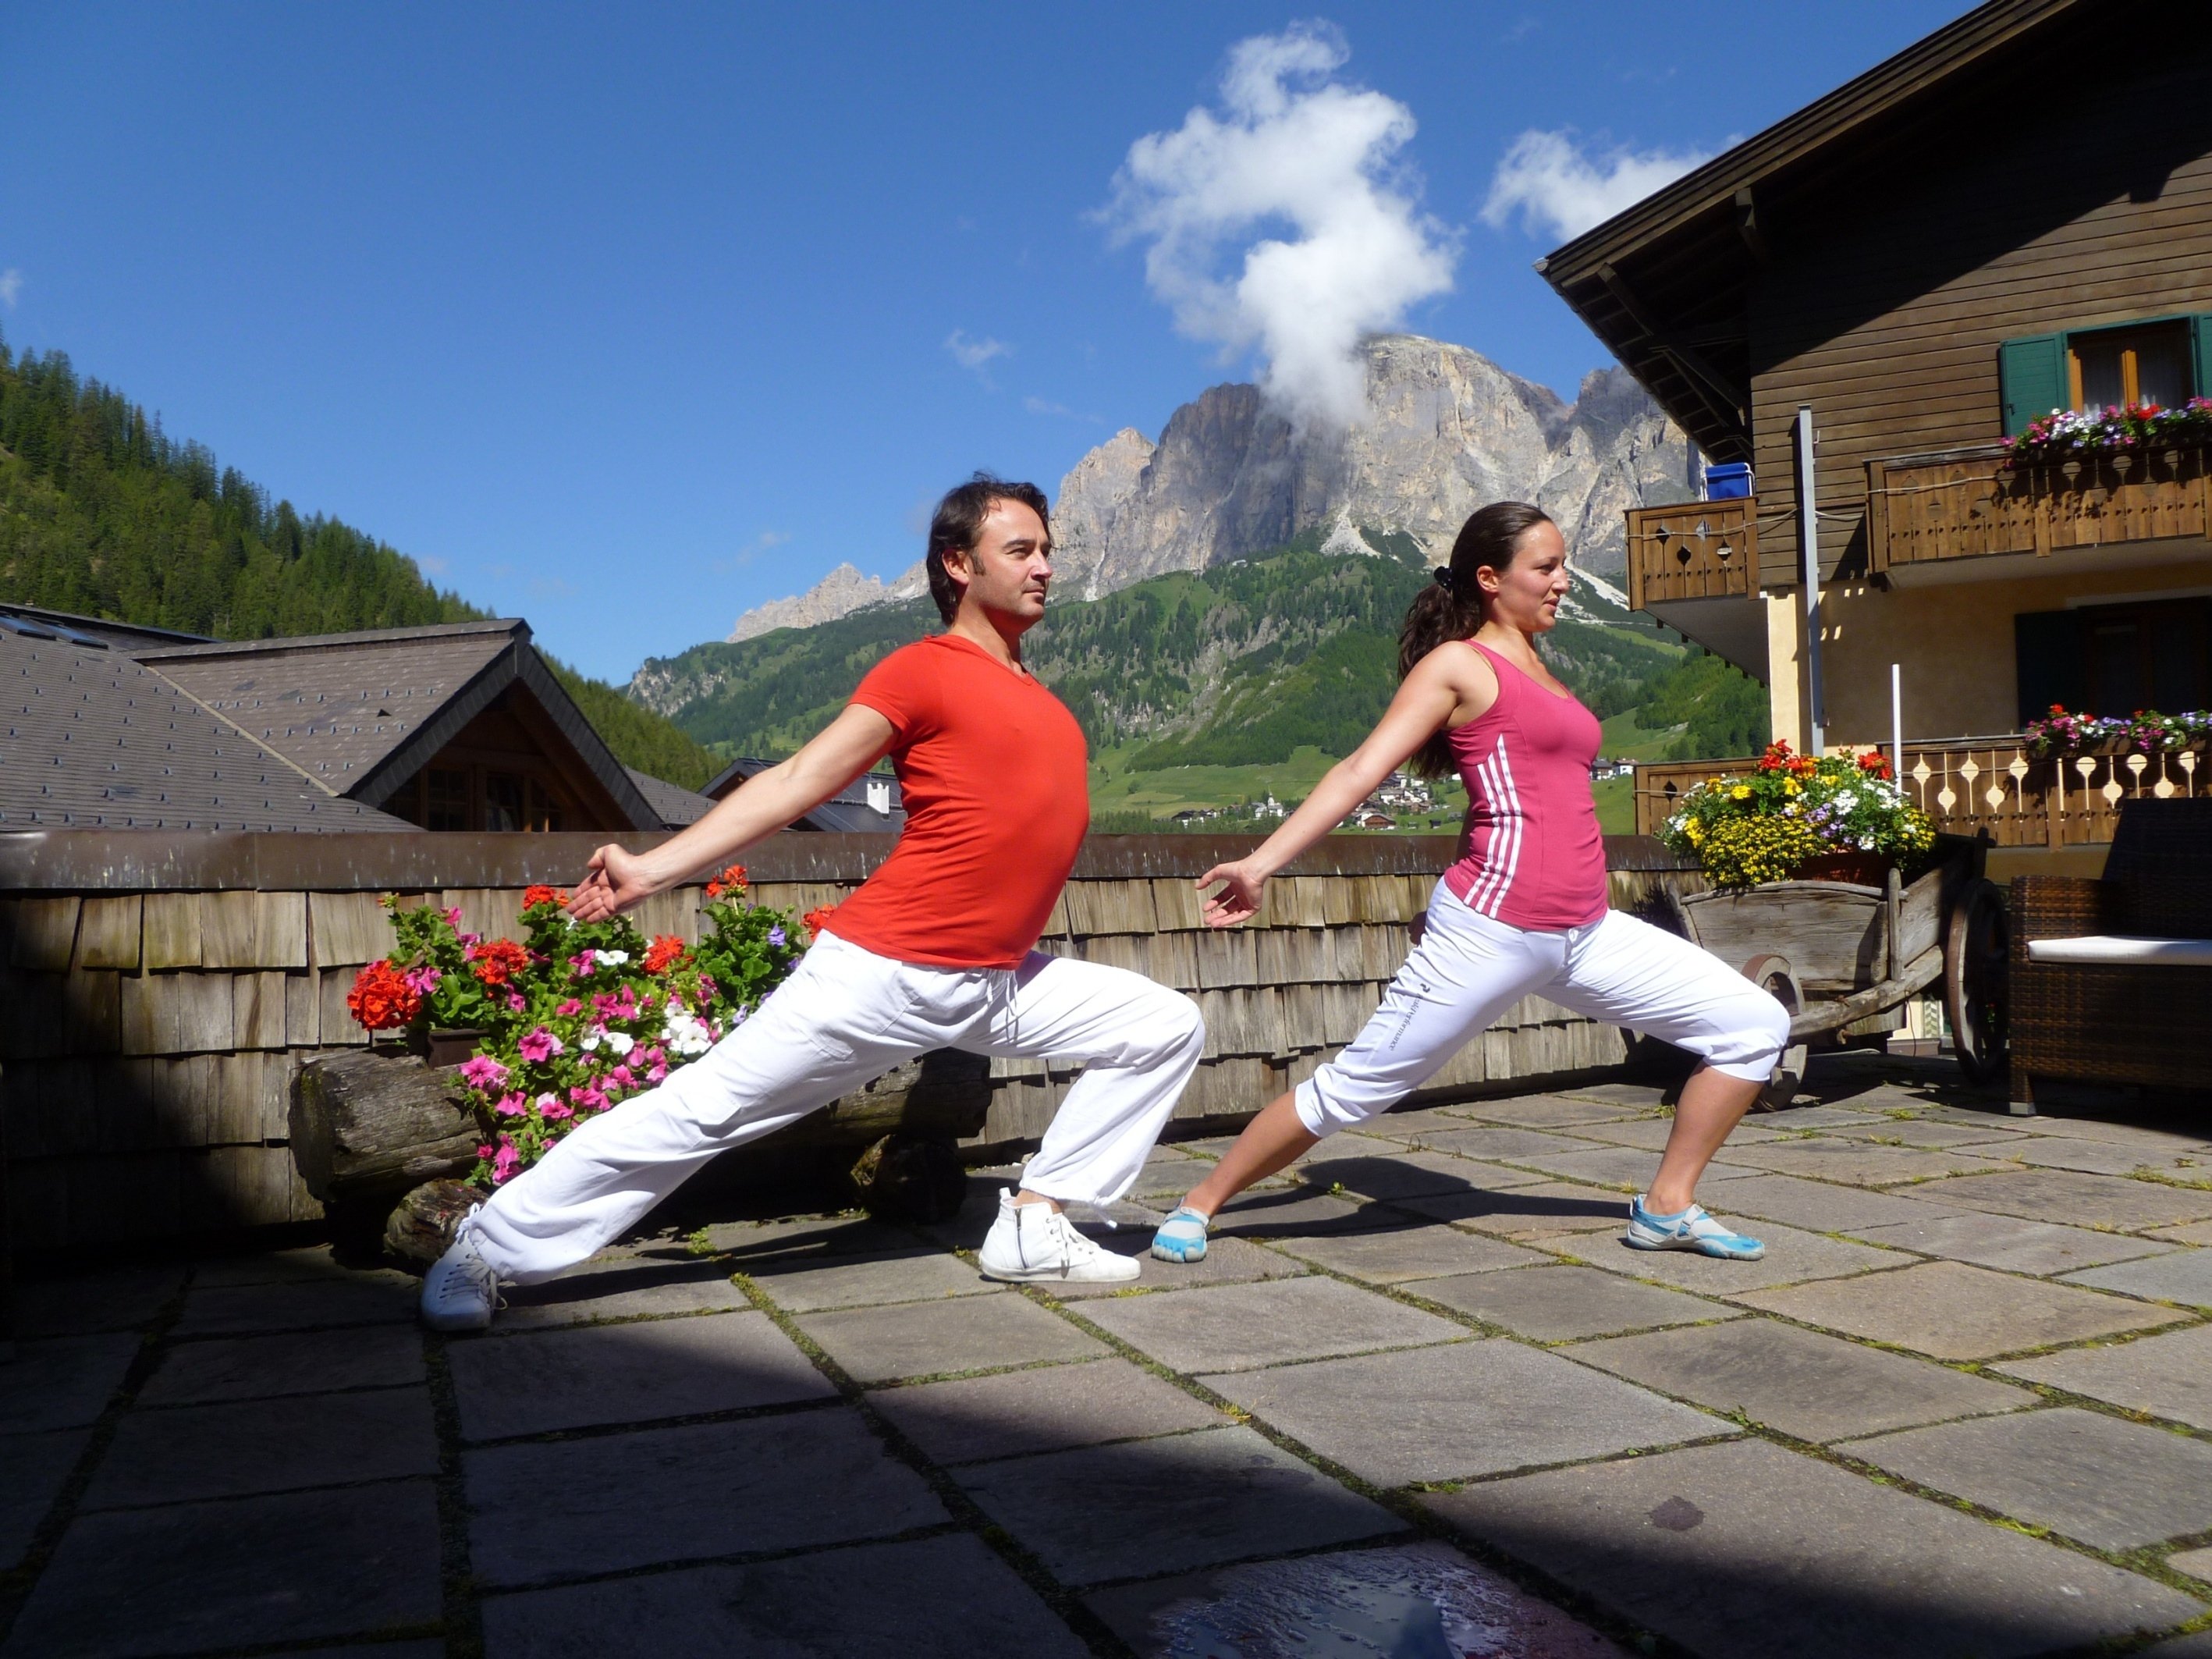 Vacanza Benessere in Alta Val Badia - Al Posta Zirm Hotel di Corvara Settimane LnB Motion